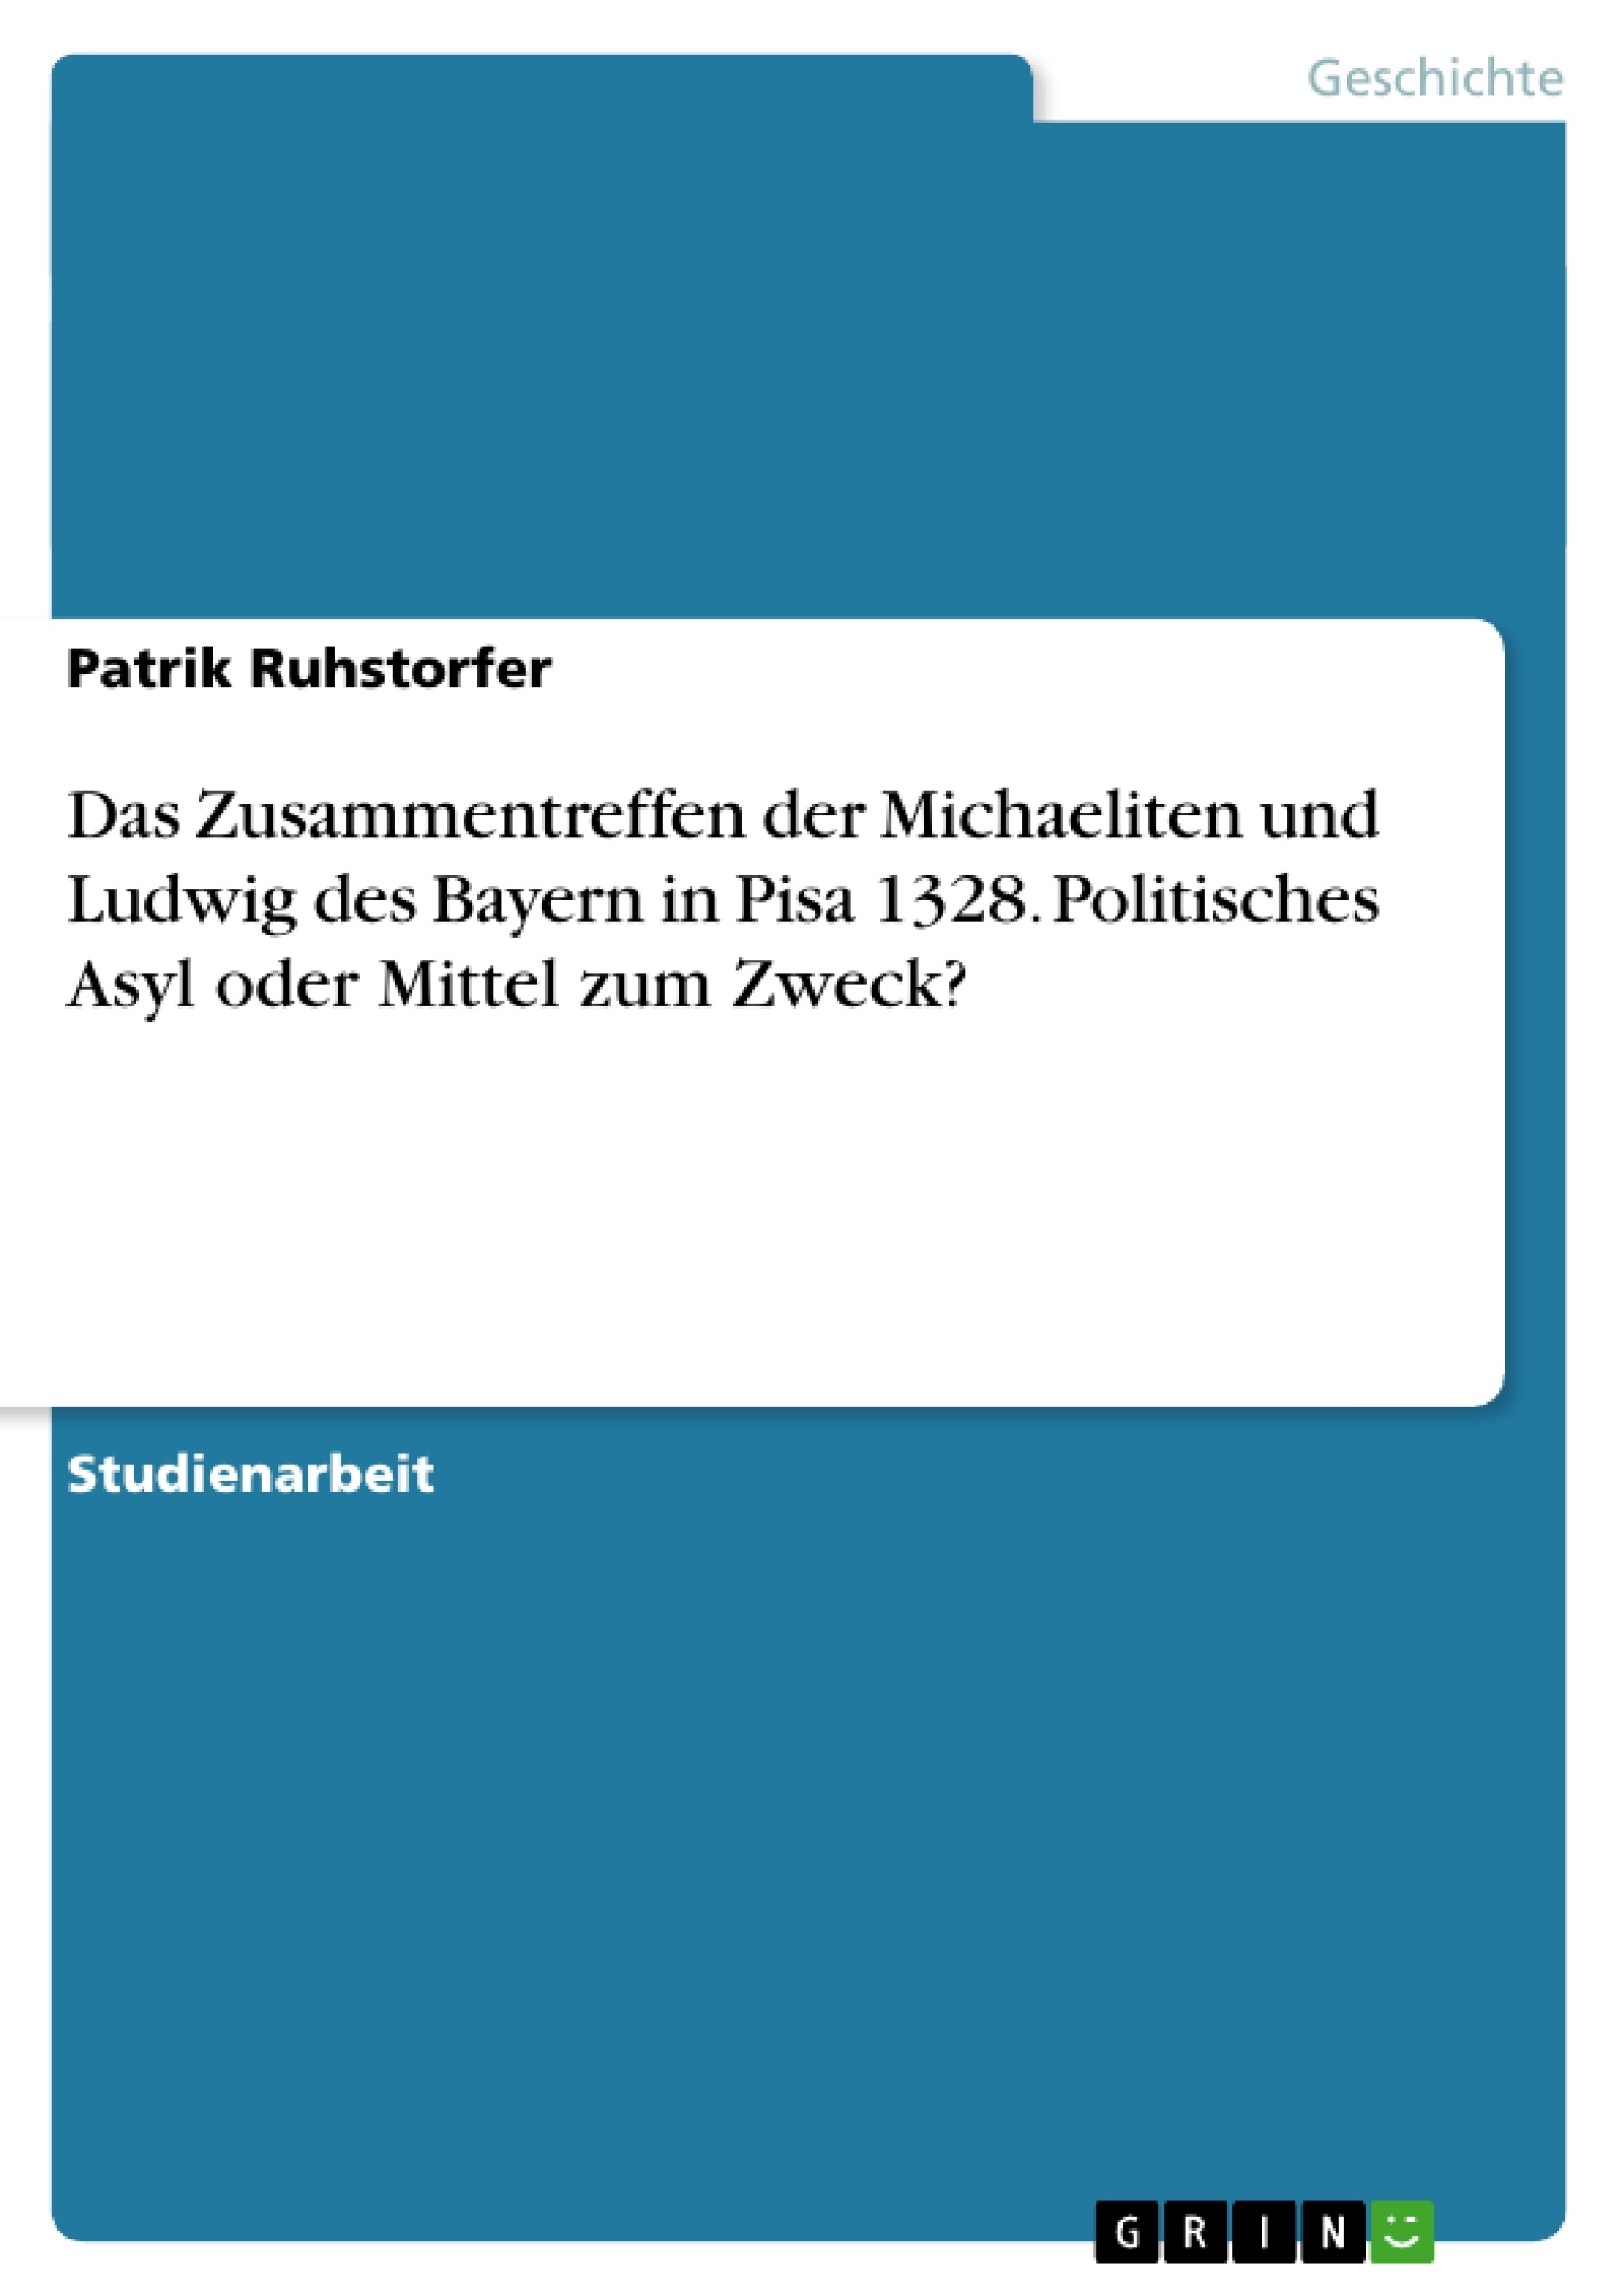 Title: Das Zusammentreffen der Michaeliten und Ludwig des Bayern in Pisa 1328. Politisches Asyl oder Mittel zum Zweck?